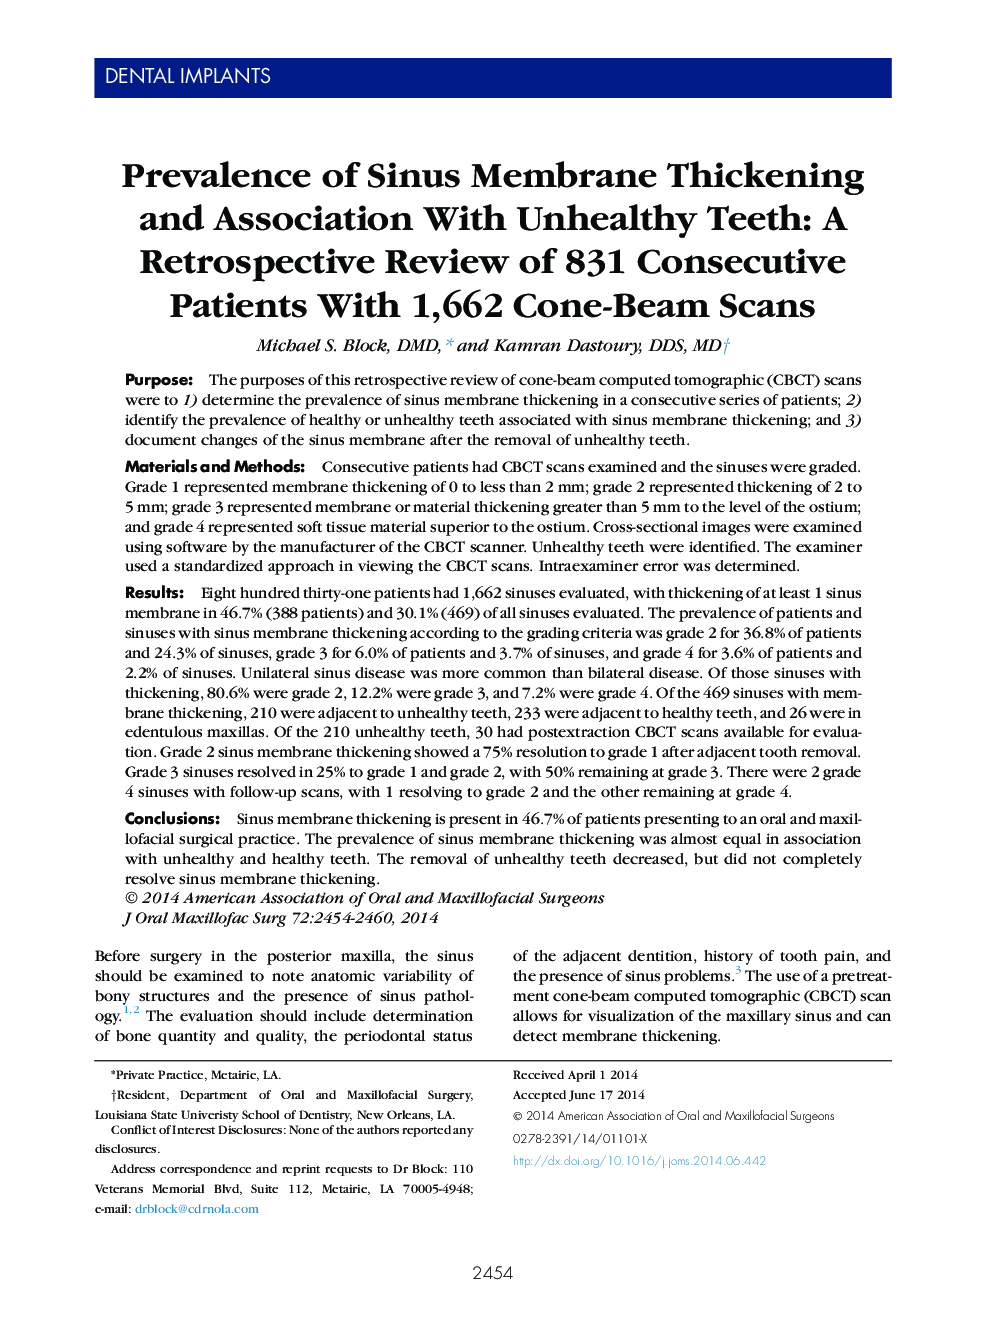 بررسی میزان ضخیم شدن غشای سینوسی و ارتباط آن با دندانهای ناسالم: بررسی تجربی از 831 بیمار متوالی با 1672 اسکن سیگنال مخروطی 